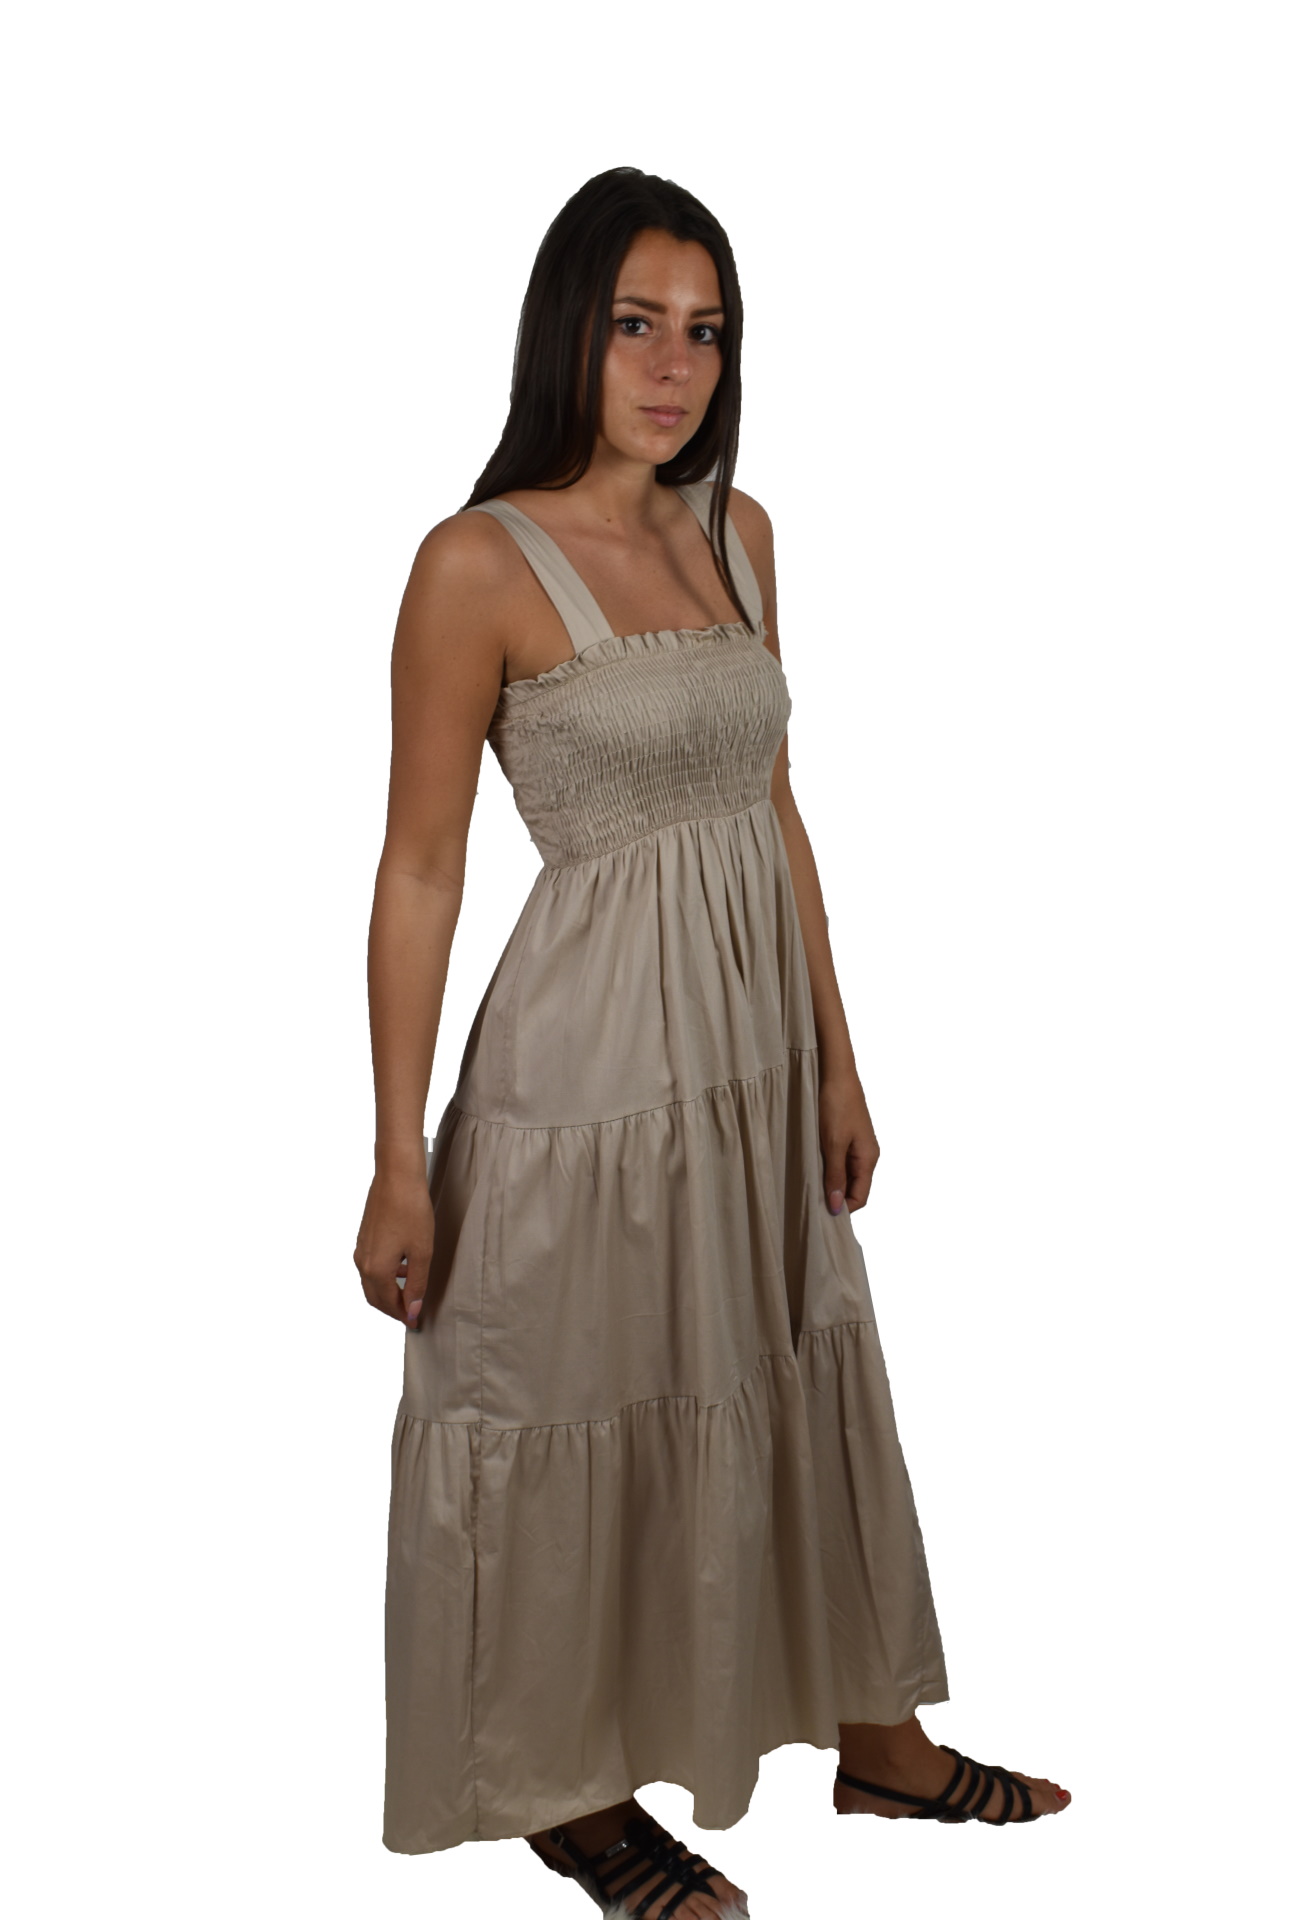 ABIMAXPE2101 BEIGE ABITO LUNGO DA DONNA 100 LINO 1 1stAmerican abito lungo da donna 100% lino Made in Italy - vestito lungo da sera da spiaggia da donna in lino